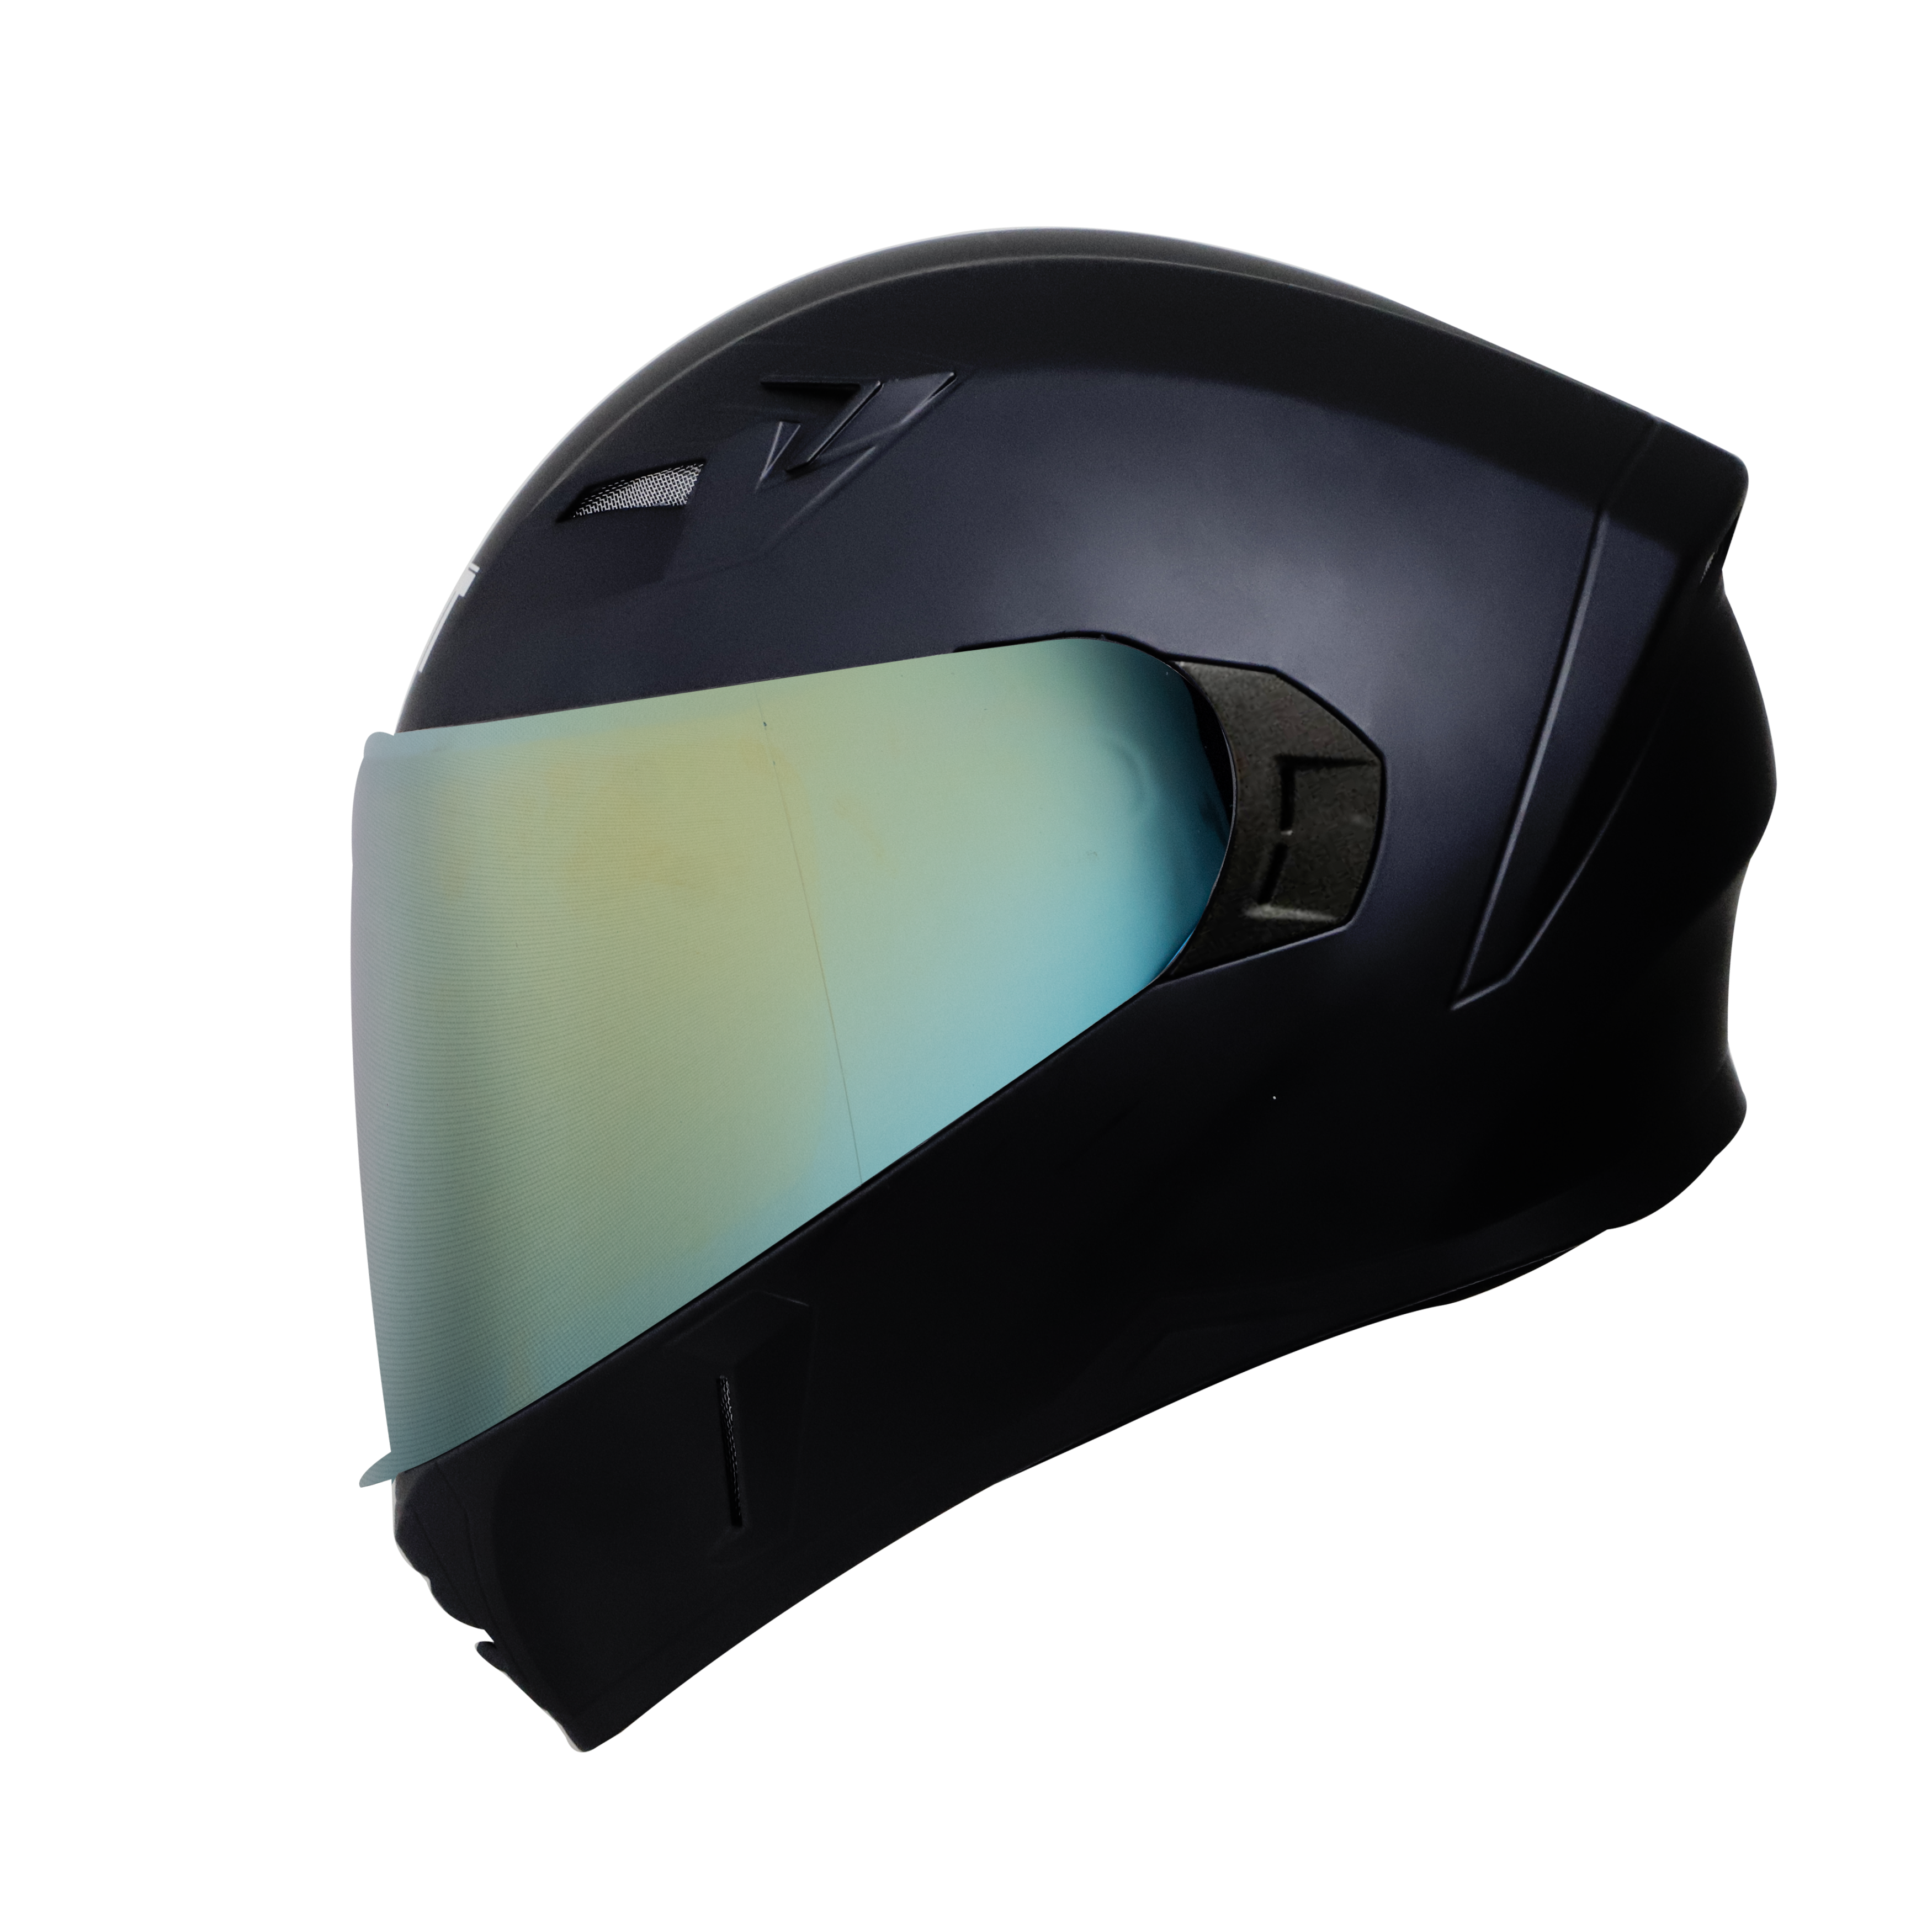 Steelbird SBA-21 GT Full Face ISI Certified Helmet (Matt Black With Chrome Gold Visor)